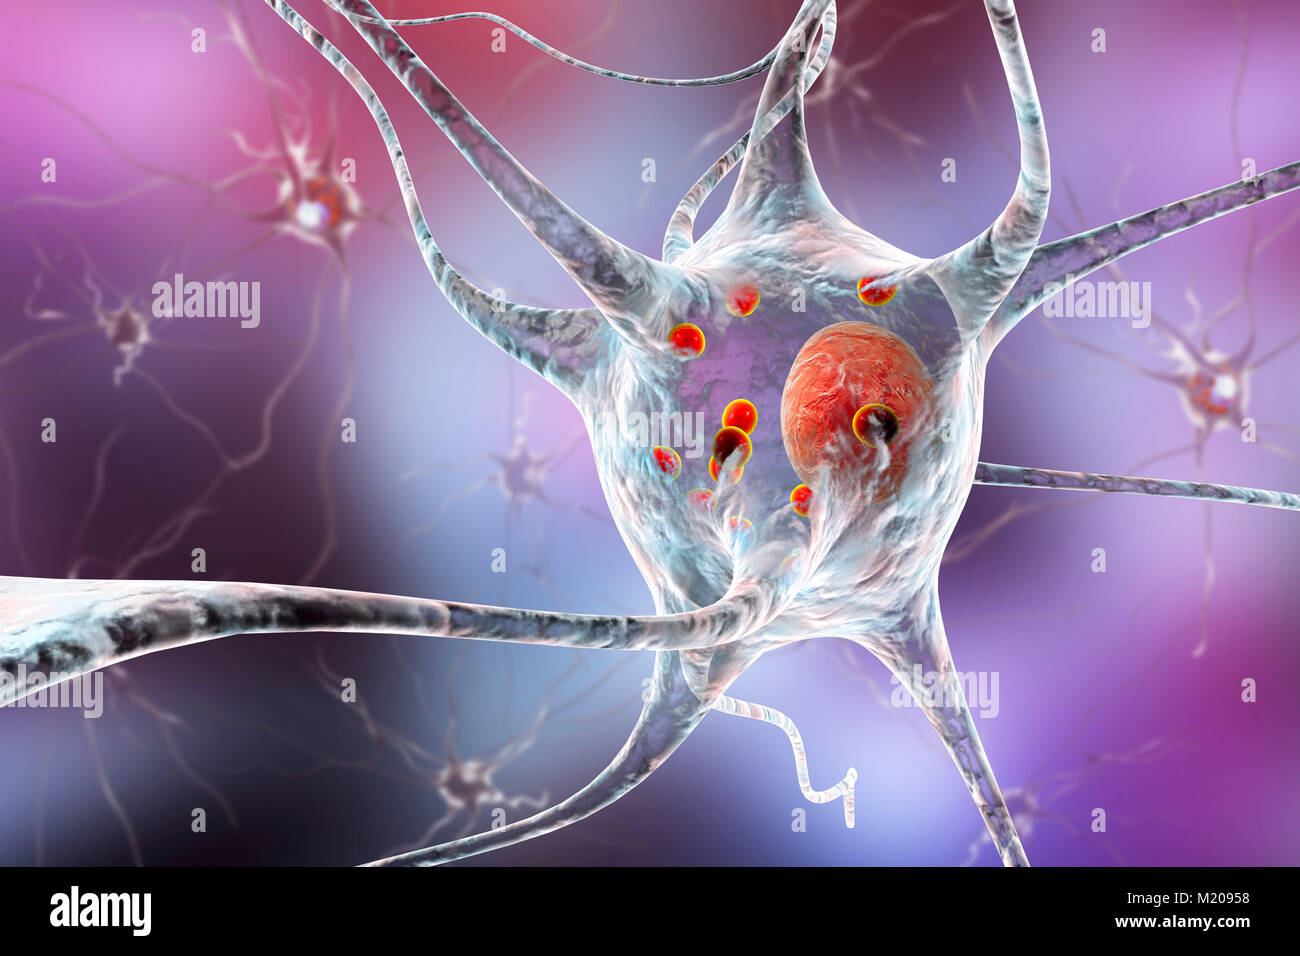 Il morbo di Parkinson cellule nervose. Illustrazione del calcolatore di umana le cellule nervose interessate da corpi di Lewy (piccole sfere di colore rosso all'interno del citoplasma di neuroni) nel cervello di un paziente con malattia di Parkinson. I corpi di Lewy sono accumuli anormali di proteine che si sviluppano all'interno di cellule nervose nel morbo di Parkinson, la demenza di Lewy Body, e di alcuni altri disturbi neurologici. Foto Stock